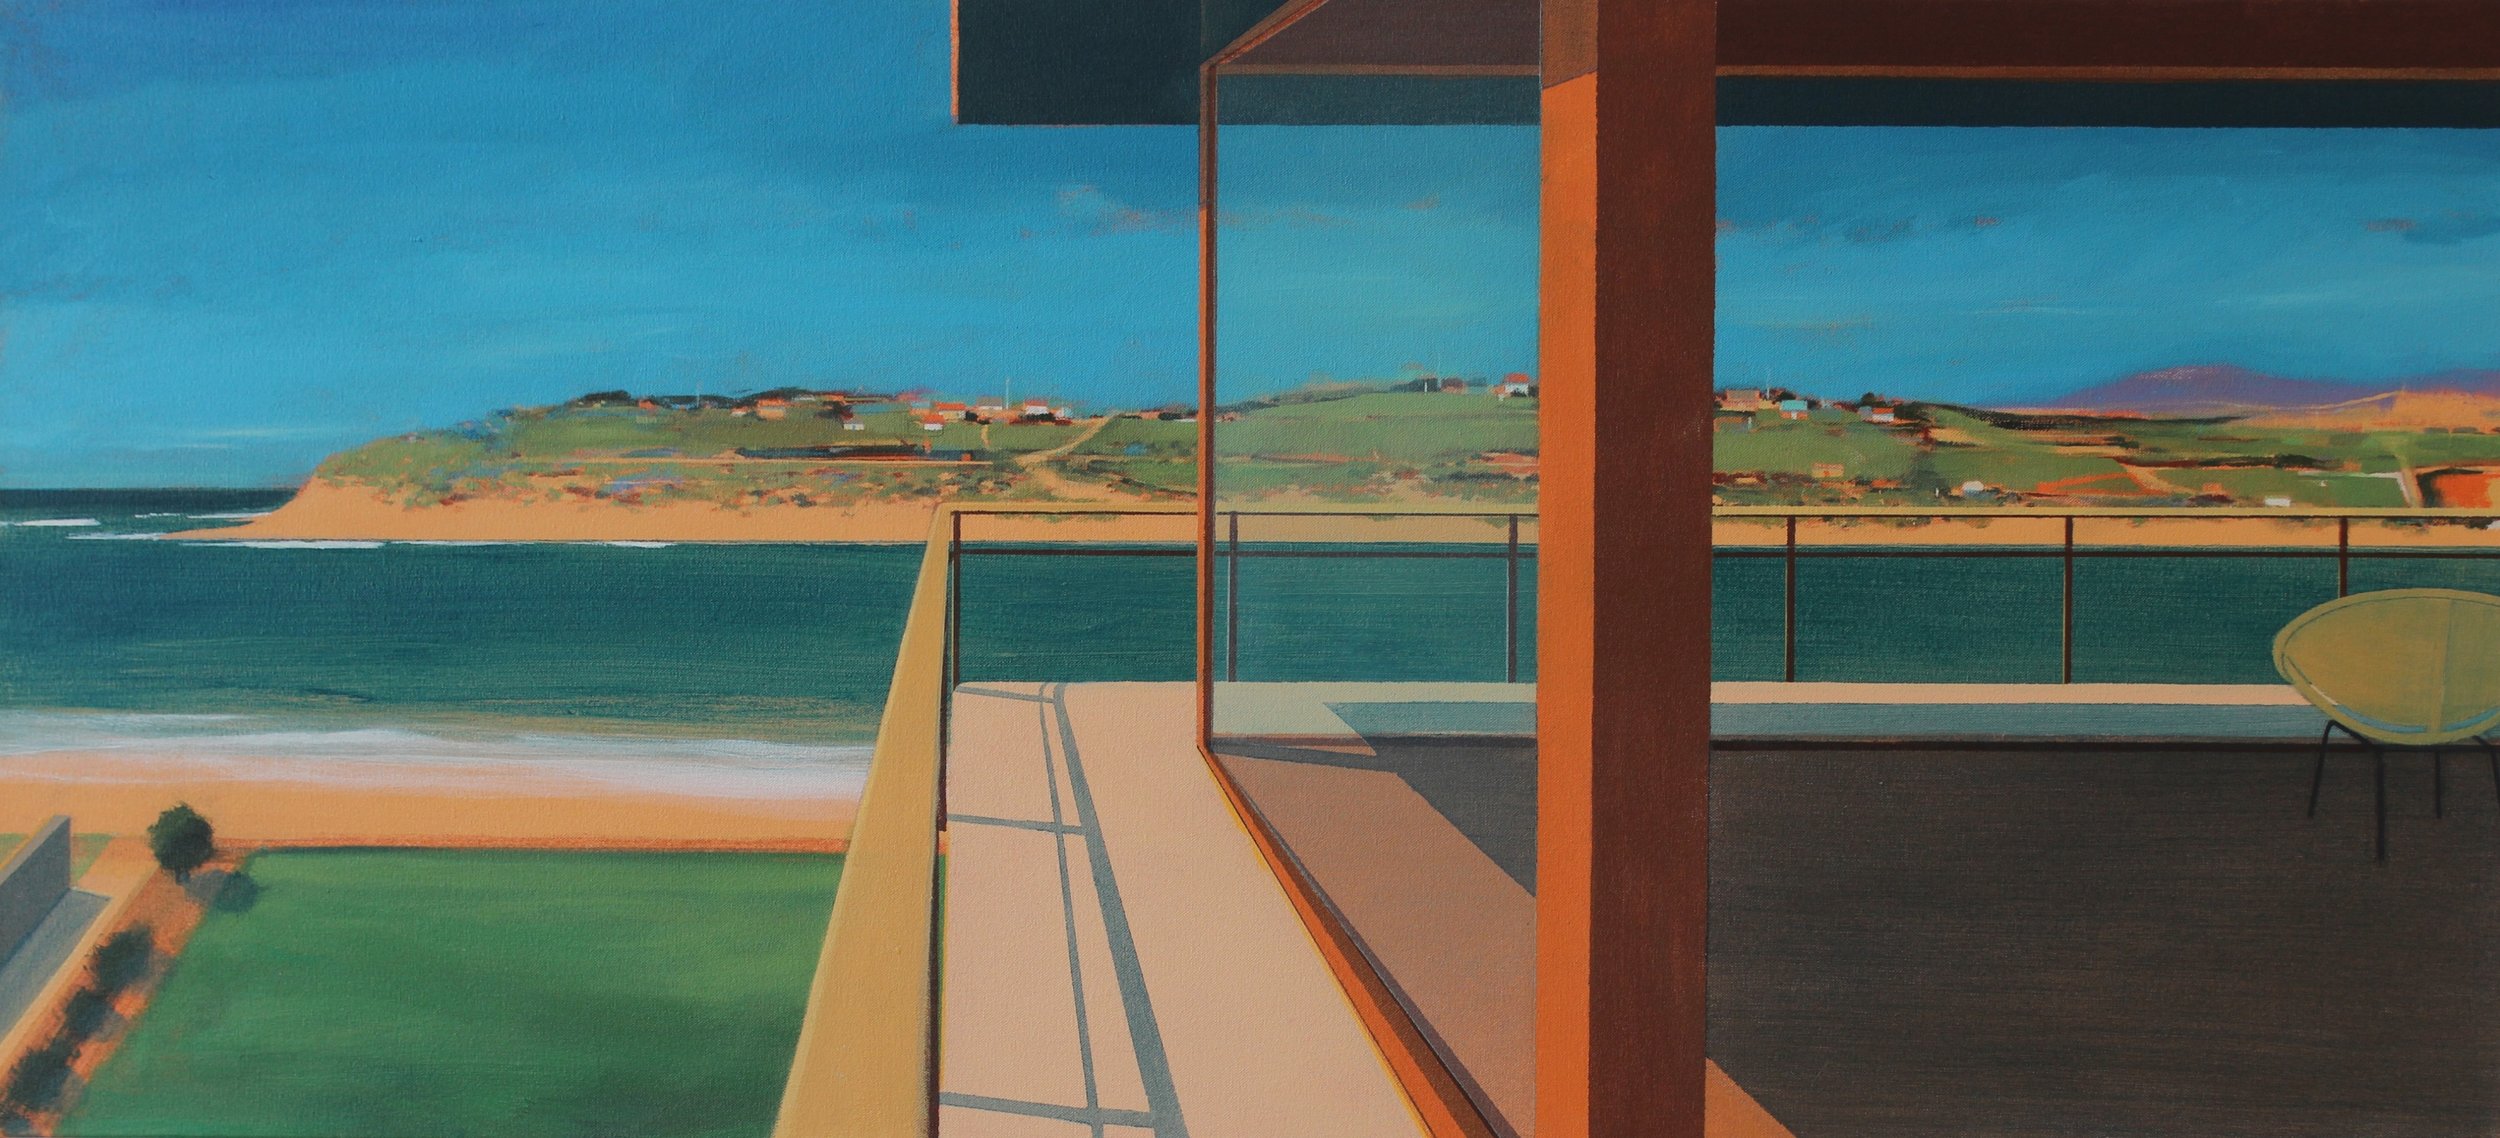 'Hayle Rivermouth', Cornwall, Alasdair Lindsay, Acrylic on canvas, 52 x 112 x 5 cm